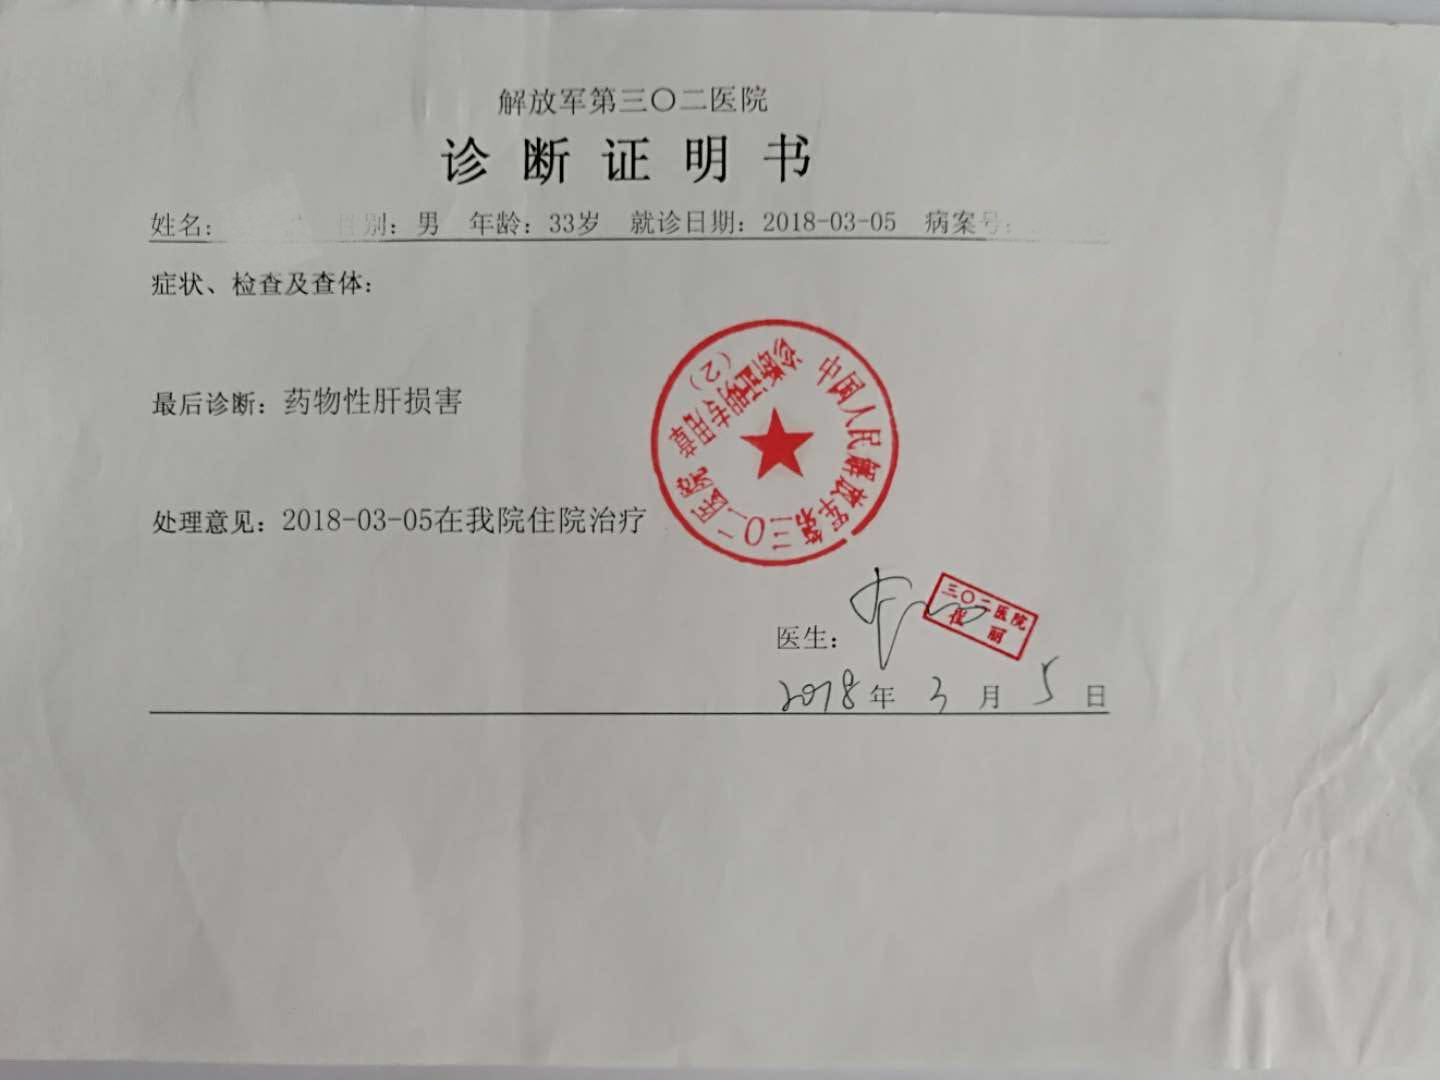 小姜已向口服液销售点所在地——北京市丰台区食药监局投诉